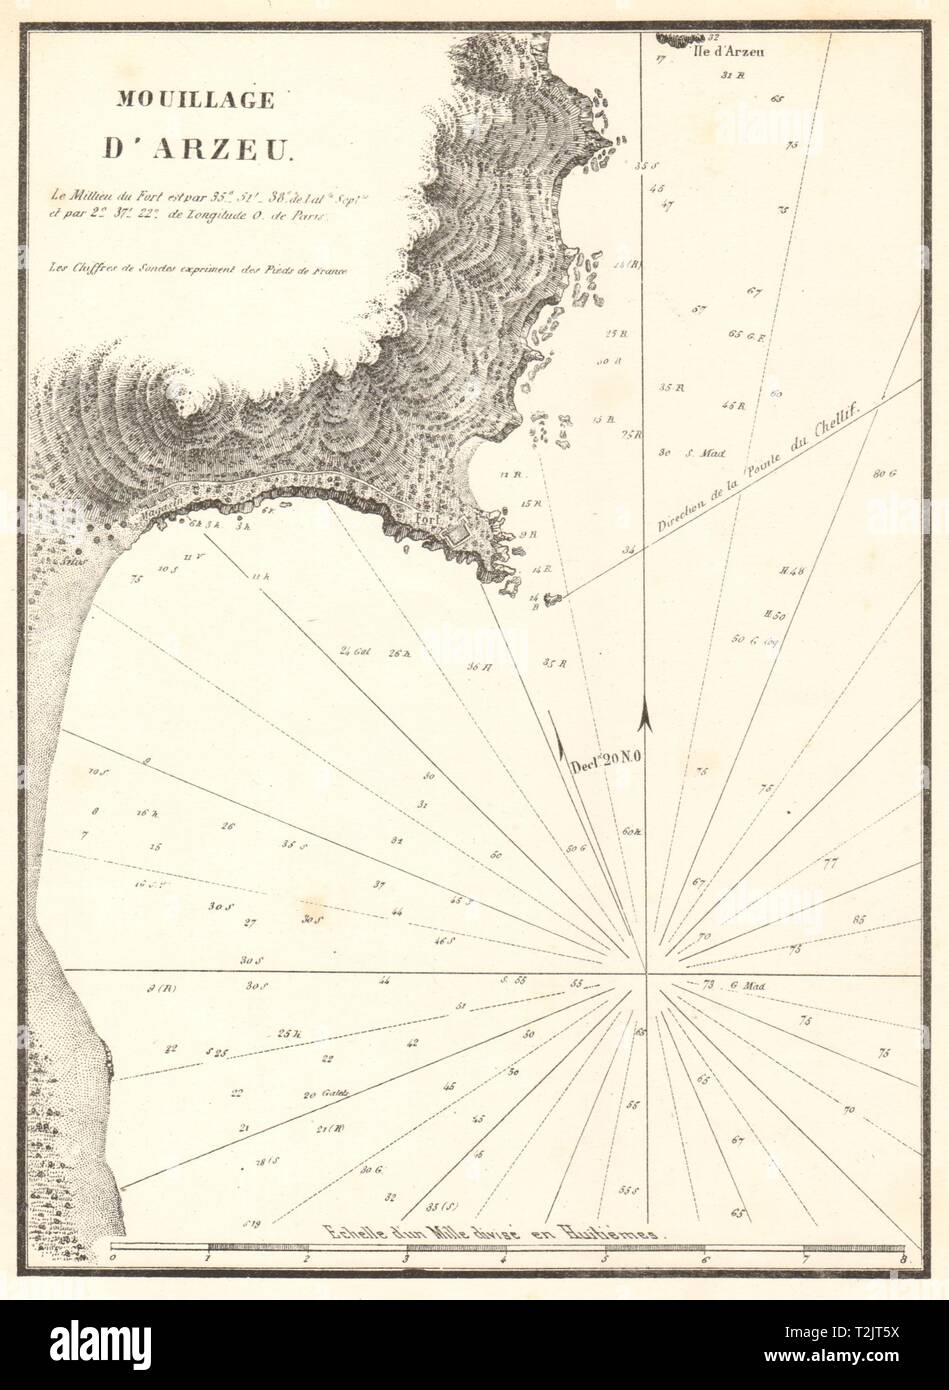 Il porto di Arzew. 'Mouillage d'Arzeu'. In Algeria. GAUTTIER 1851 antica mappa Foto Stock